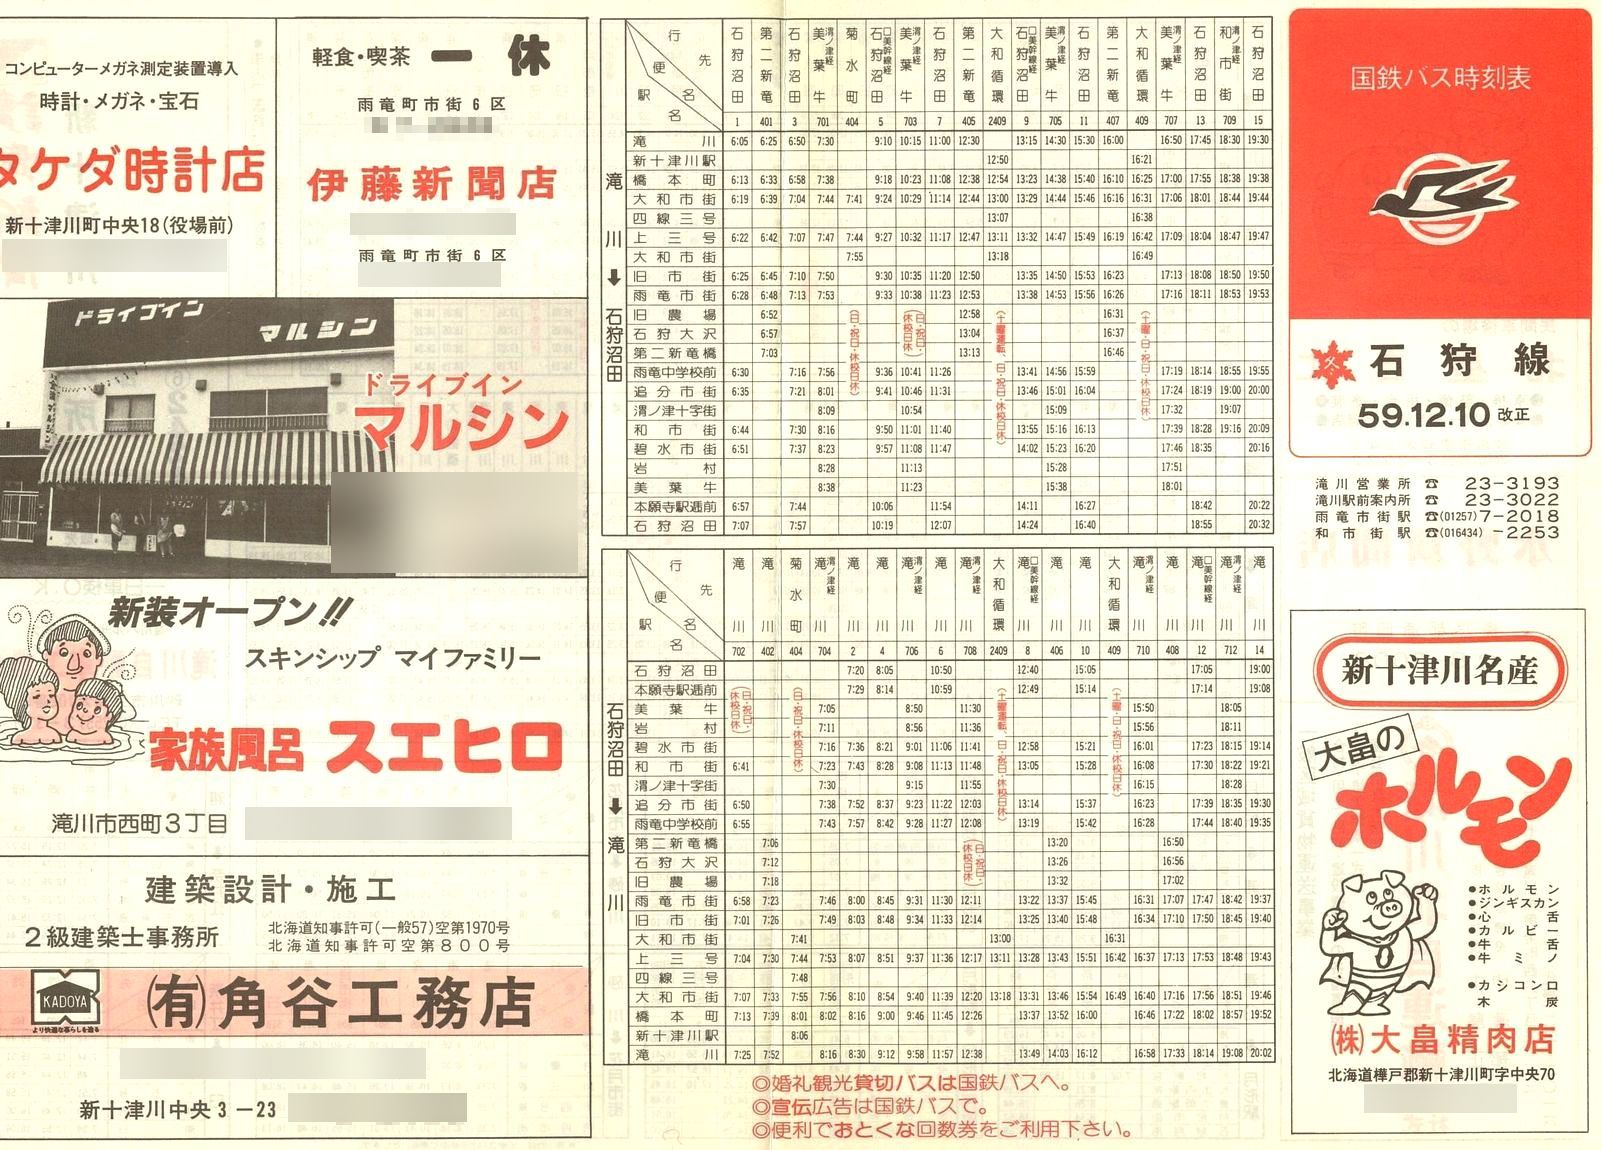 1984-12-10改正_国鉄バス_石狩線時刻表表面